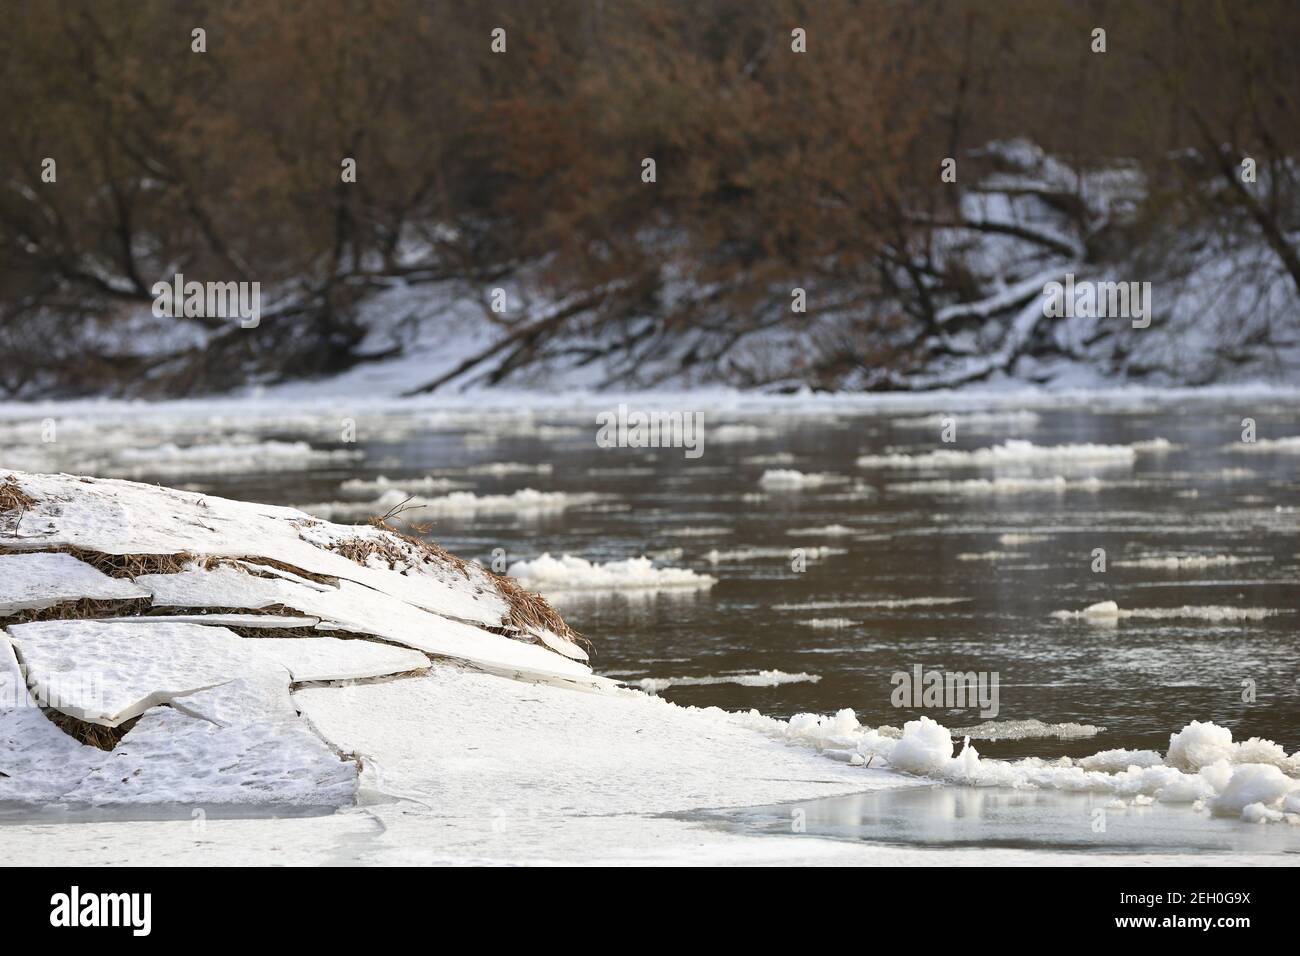 Il fiume è appeso in inverno, si è scongelato dal fiume, gli alberi sulla riva, il tree stump nel ghiaccio, la neve e galleggia sul fiume Foto Stock